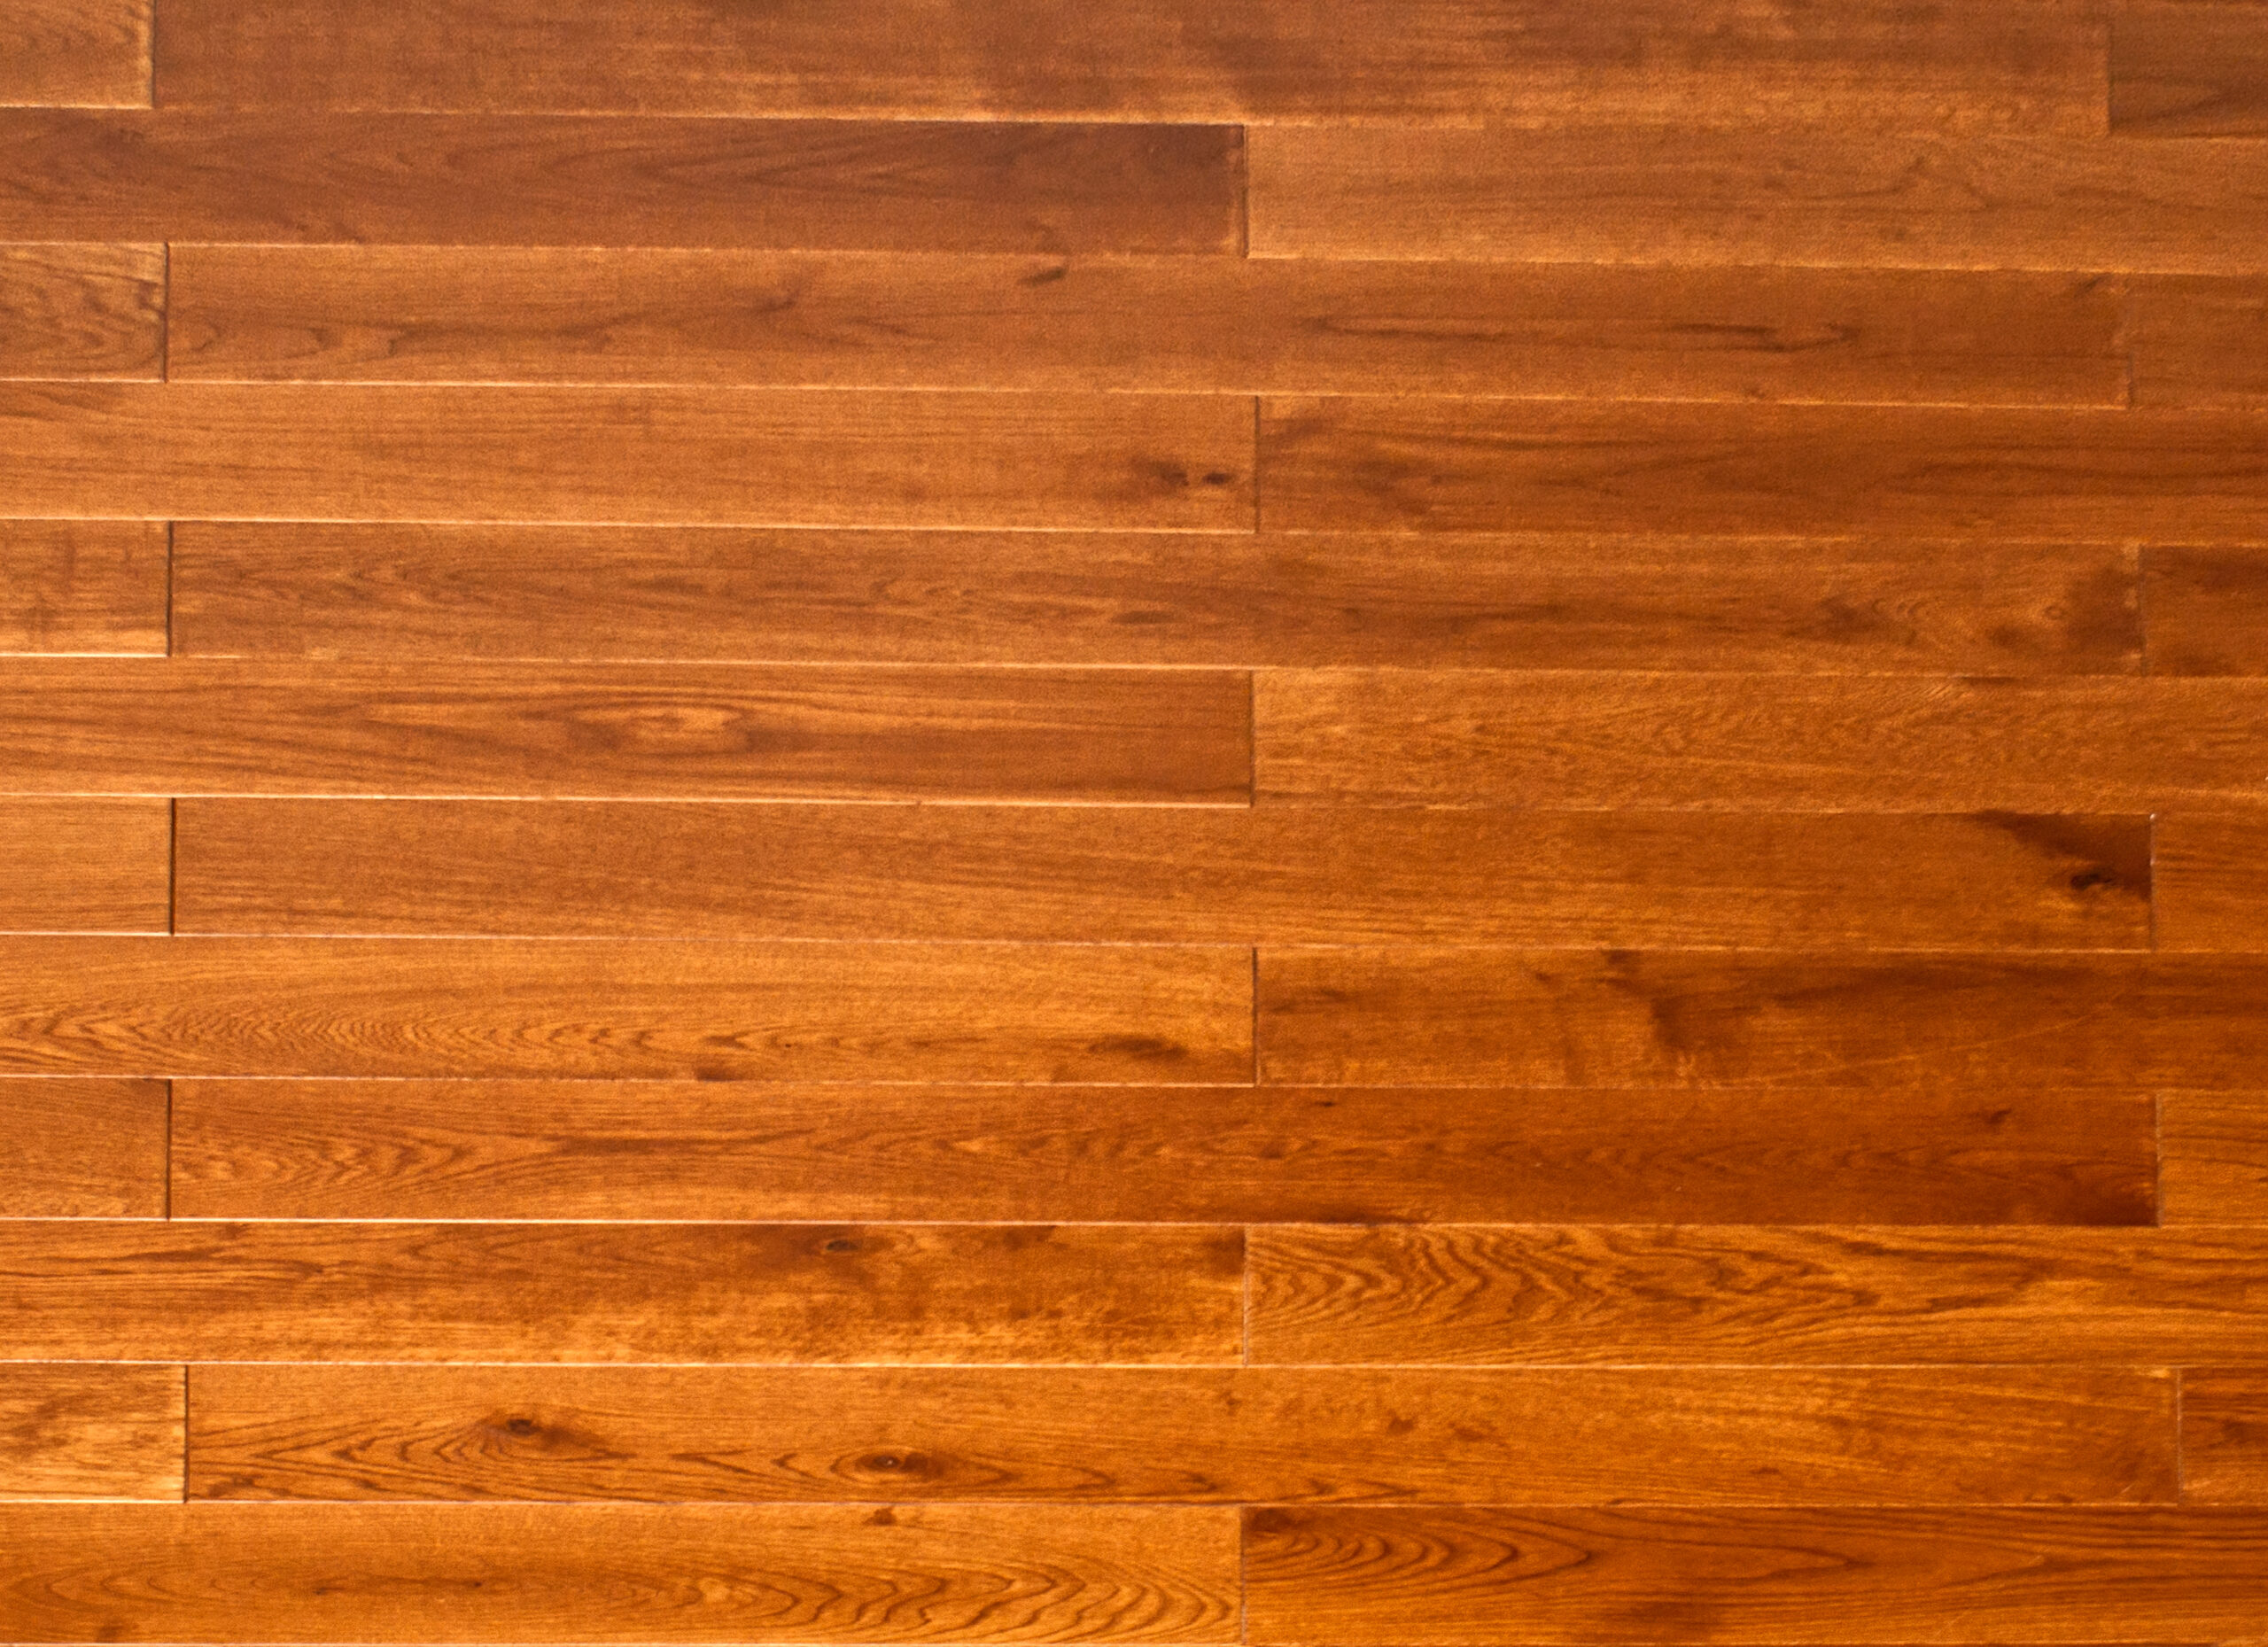 How to Refinish Badly Damaged Hardwood Floors